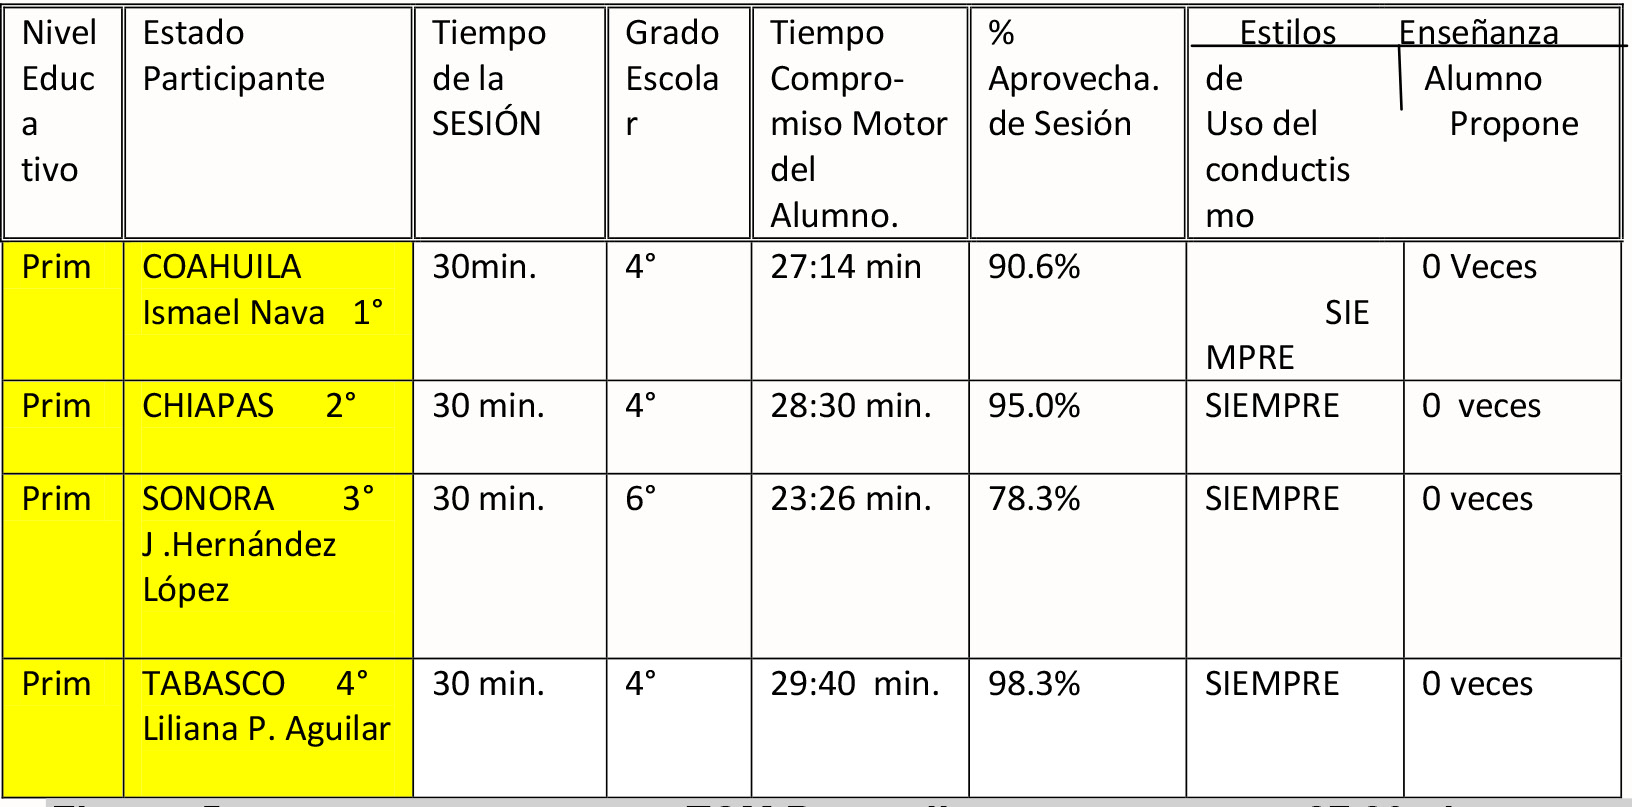 ACTIVACIÓN FÍSICA MUSICALIZADA (Categoría Profesor de Educación Física) Tuxtla G. Chiapas 12 Octubre 2012 7:16 minutos, aprovechamiento 14.5%. Puebla 8.08 minutos, aprovechamiento 17.